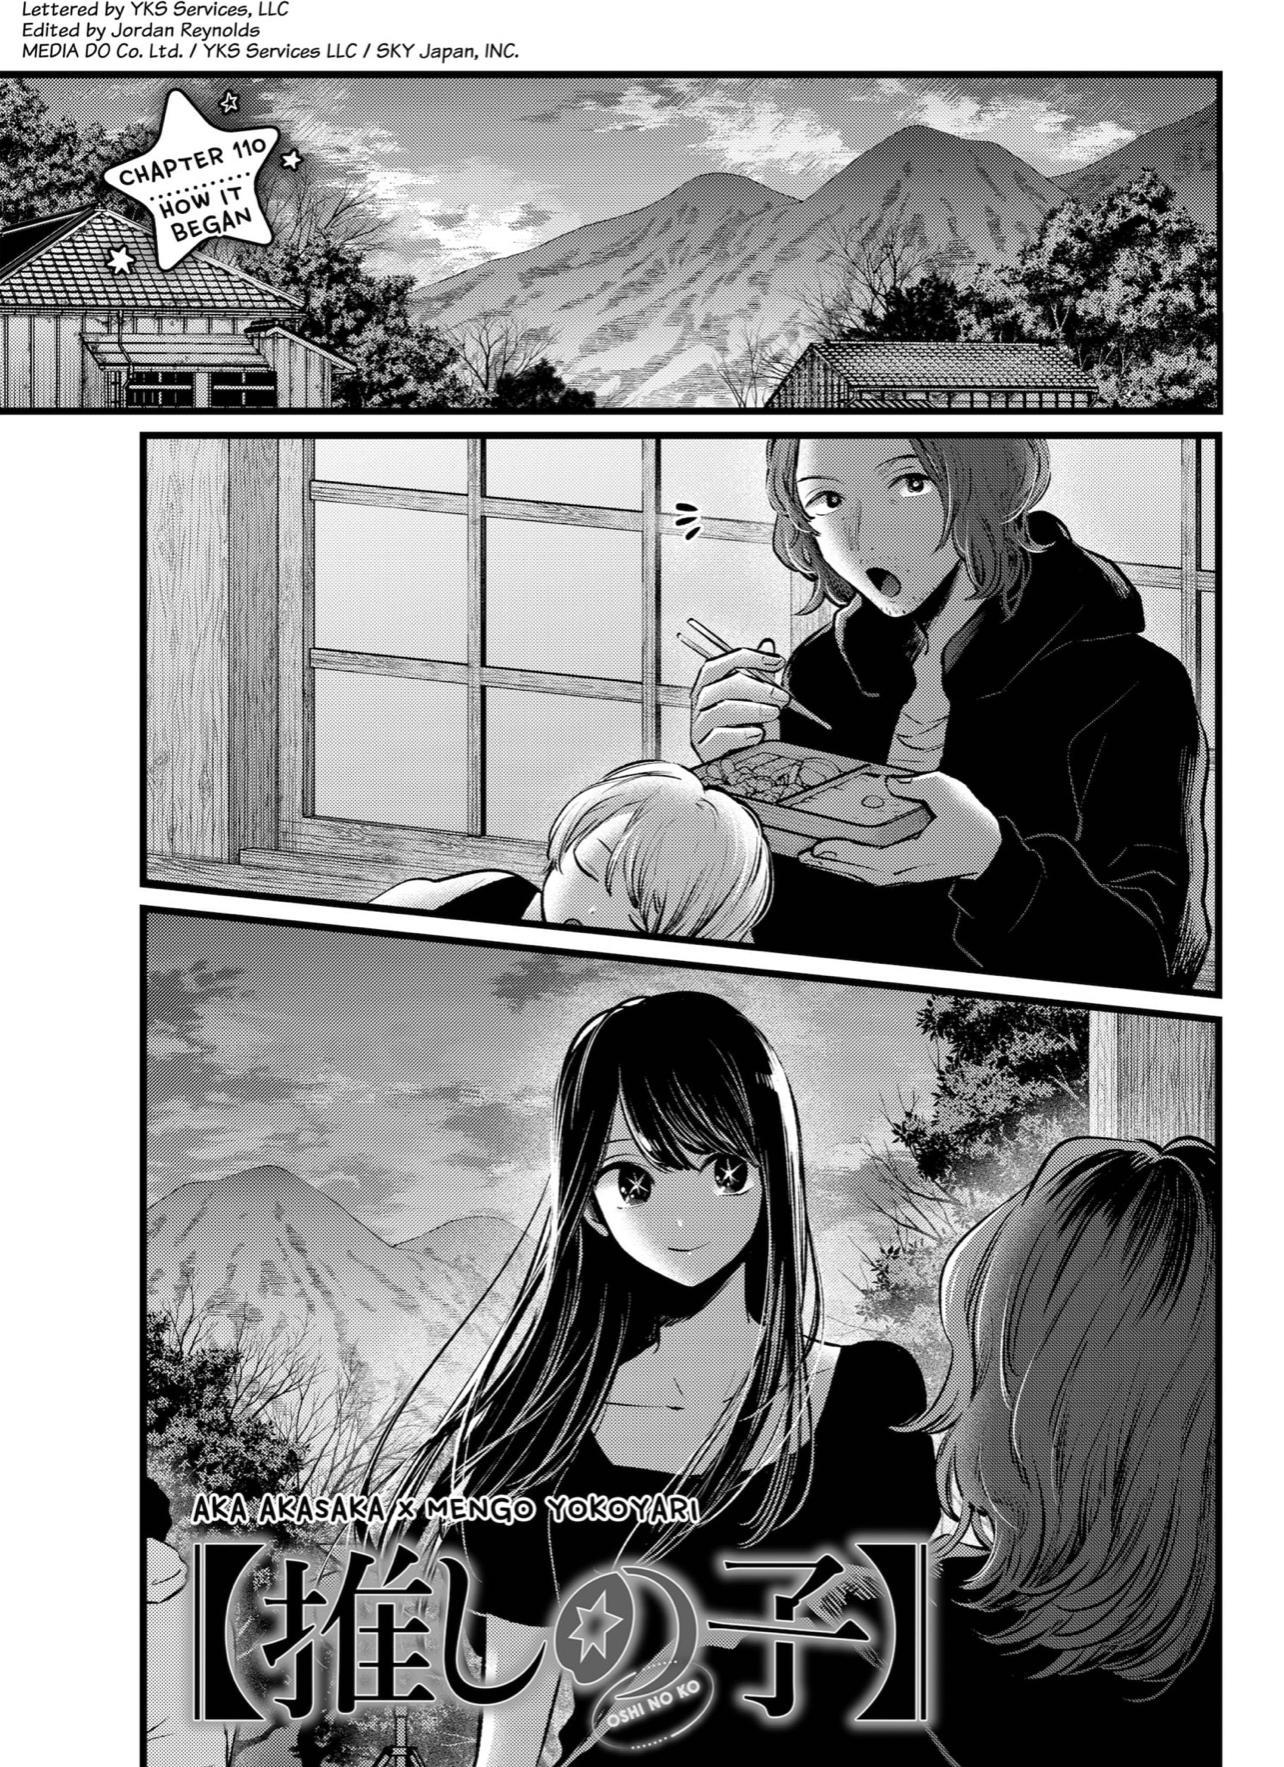 Oshi no ko, Chapter 124 - Oshi no ko Manga Online